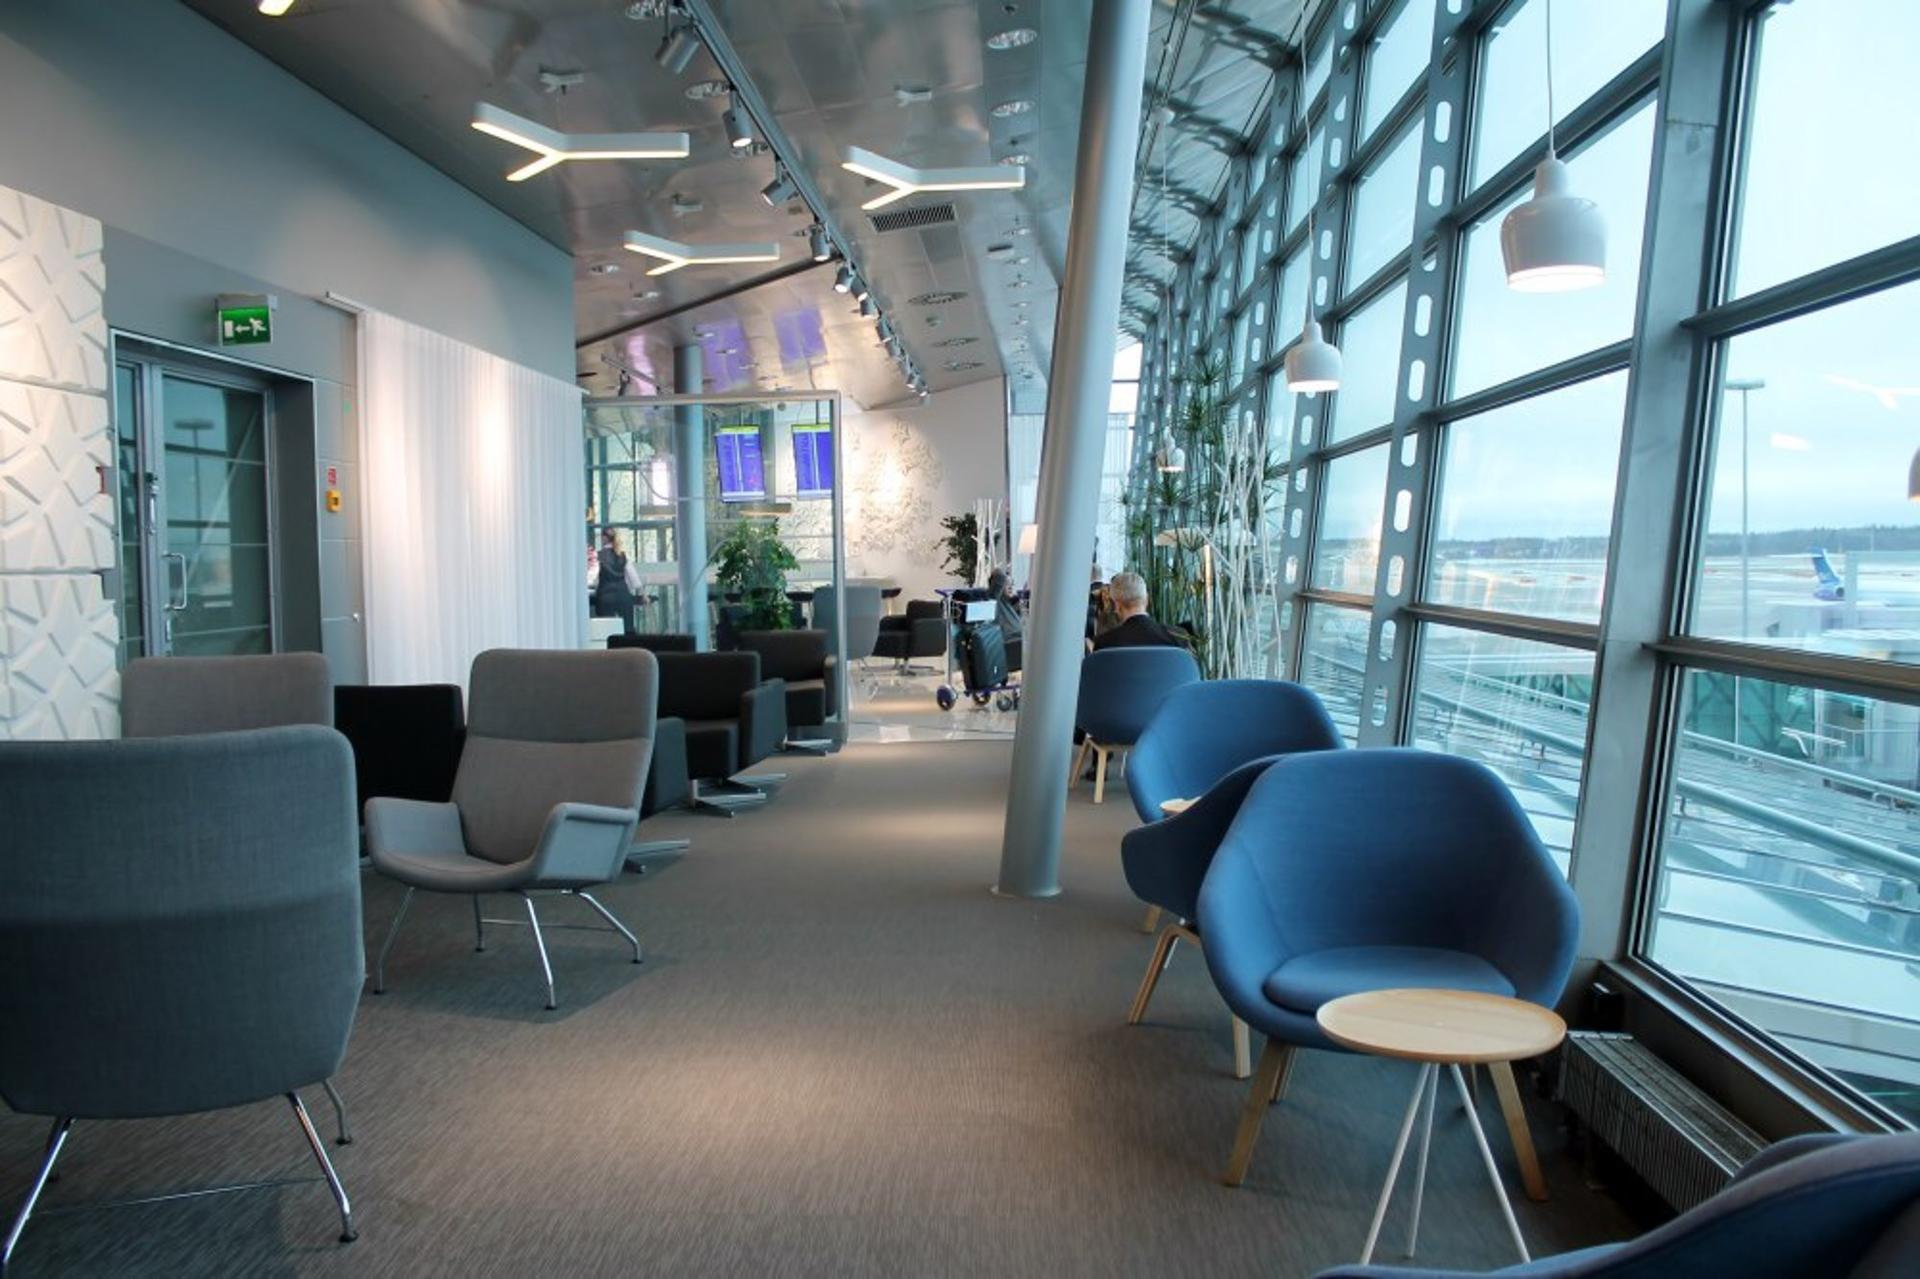 Finnair Lounge image 12 of 38